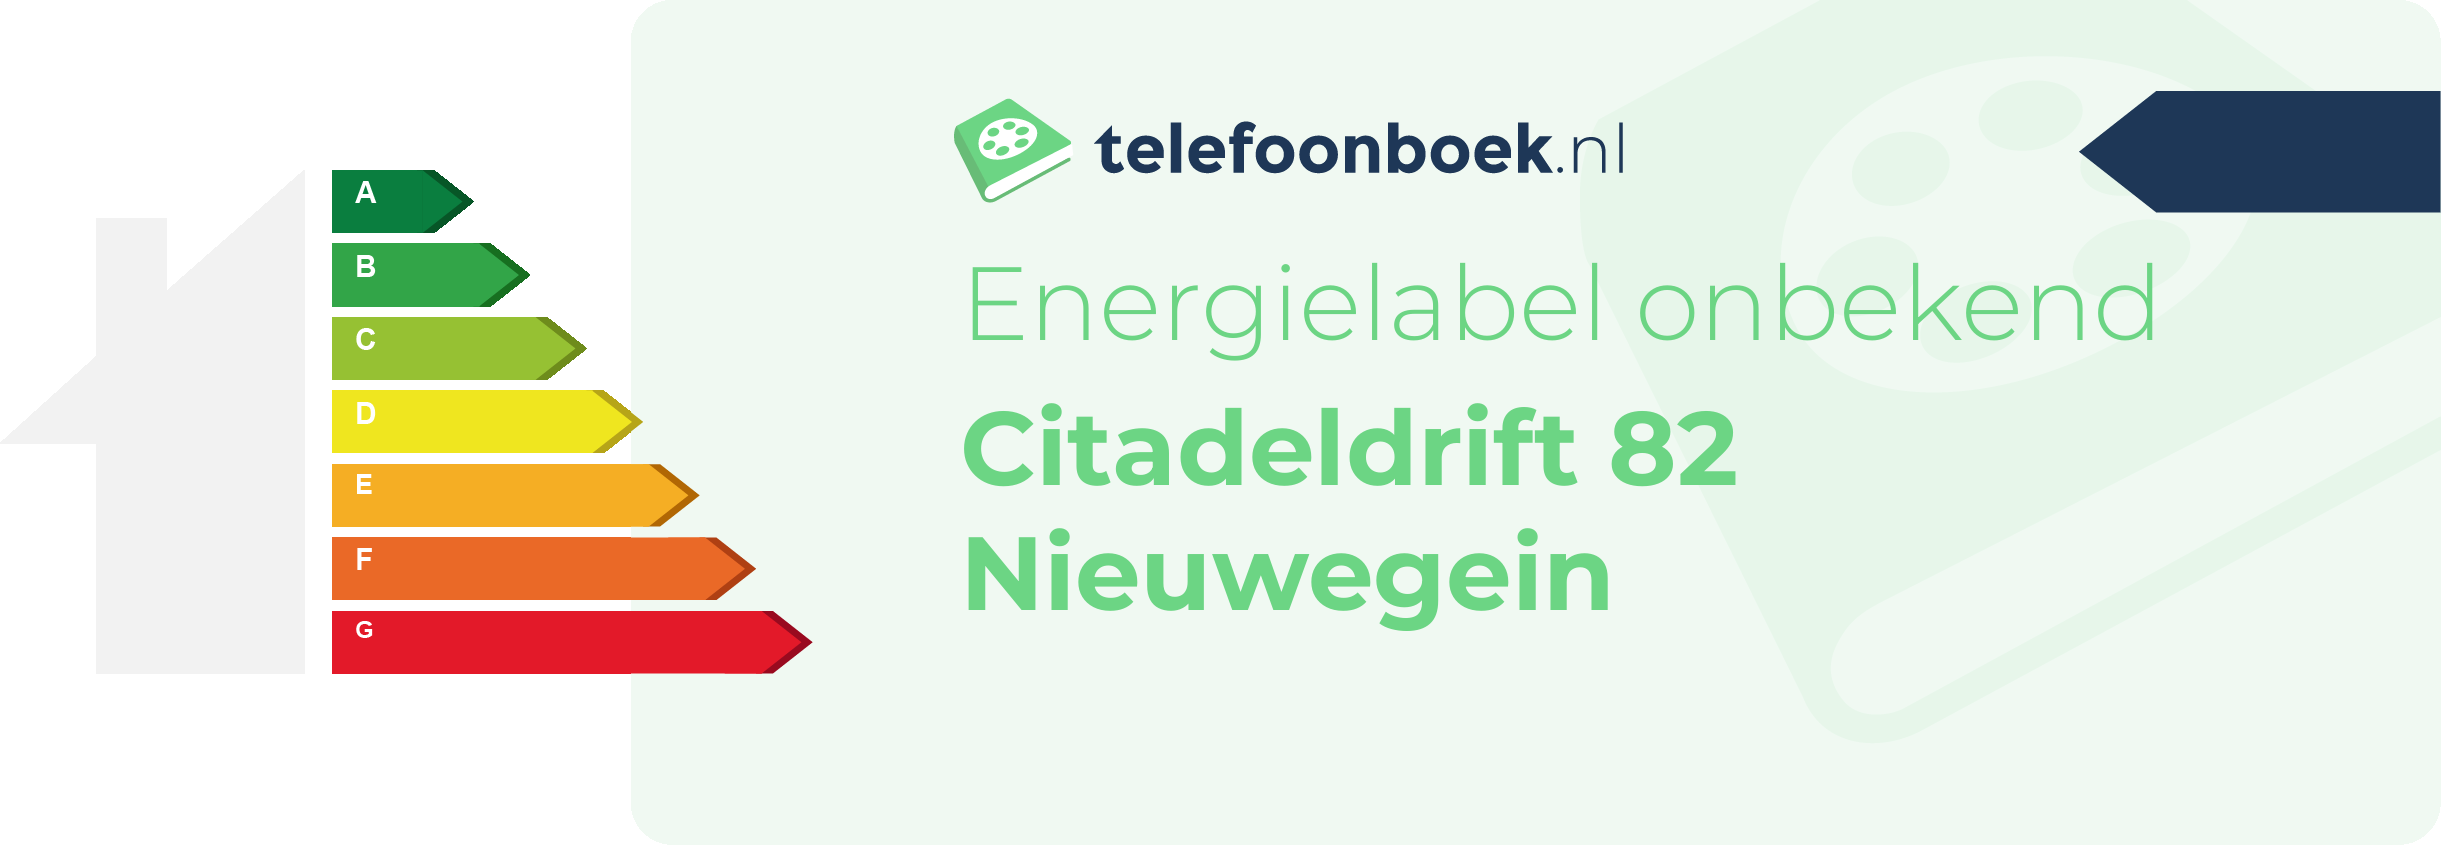 Energielabel Citadeldrift 82 Nieuwegein